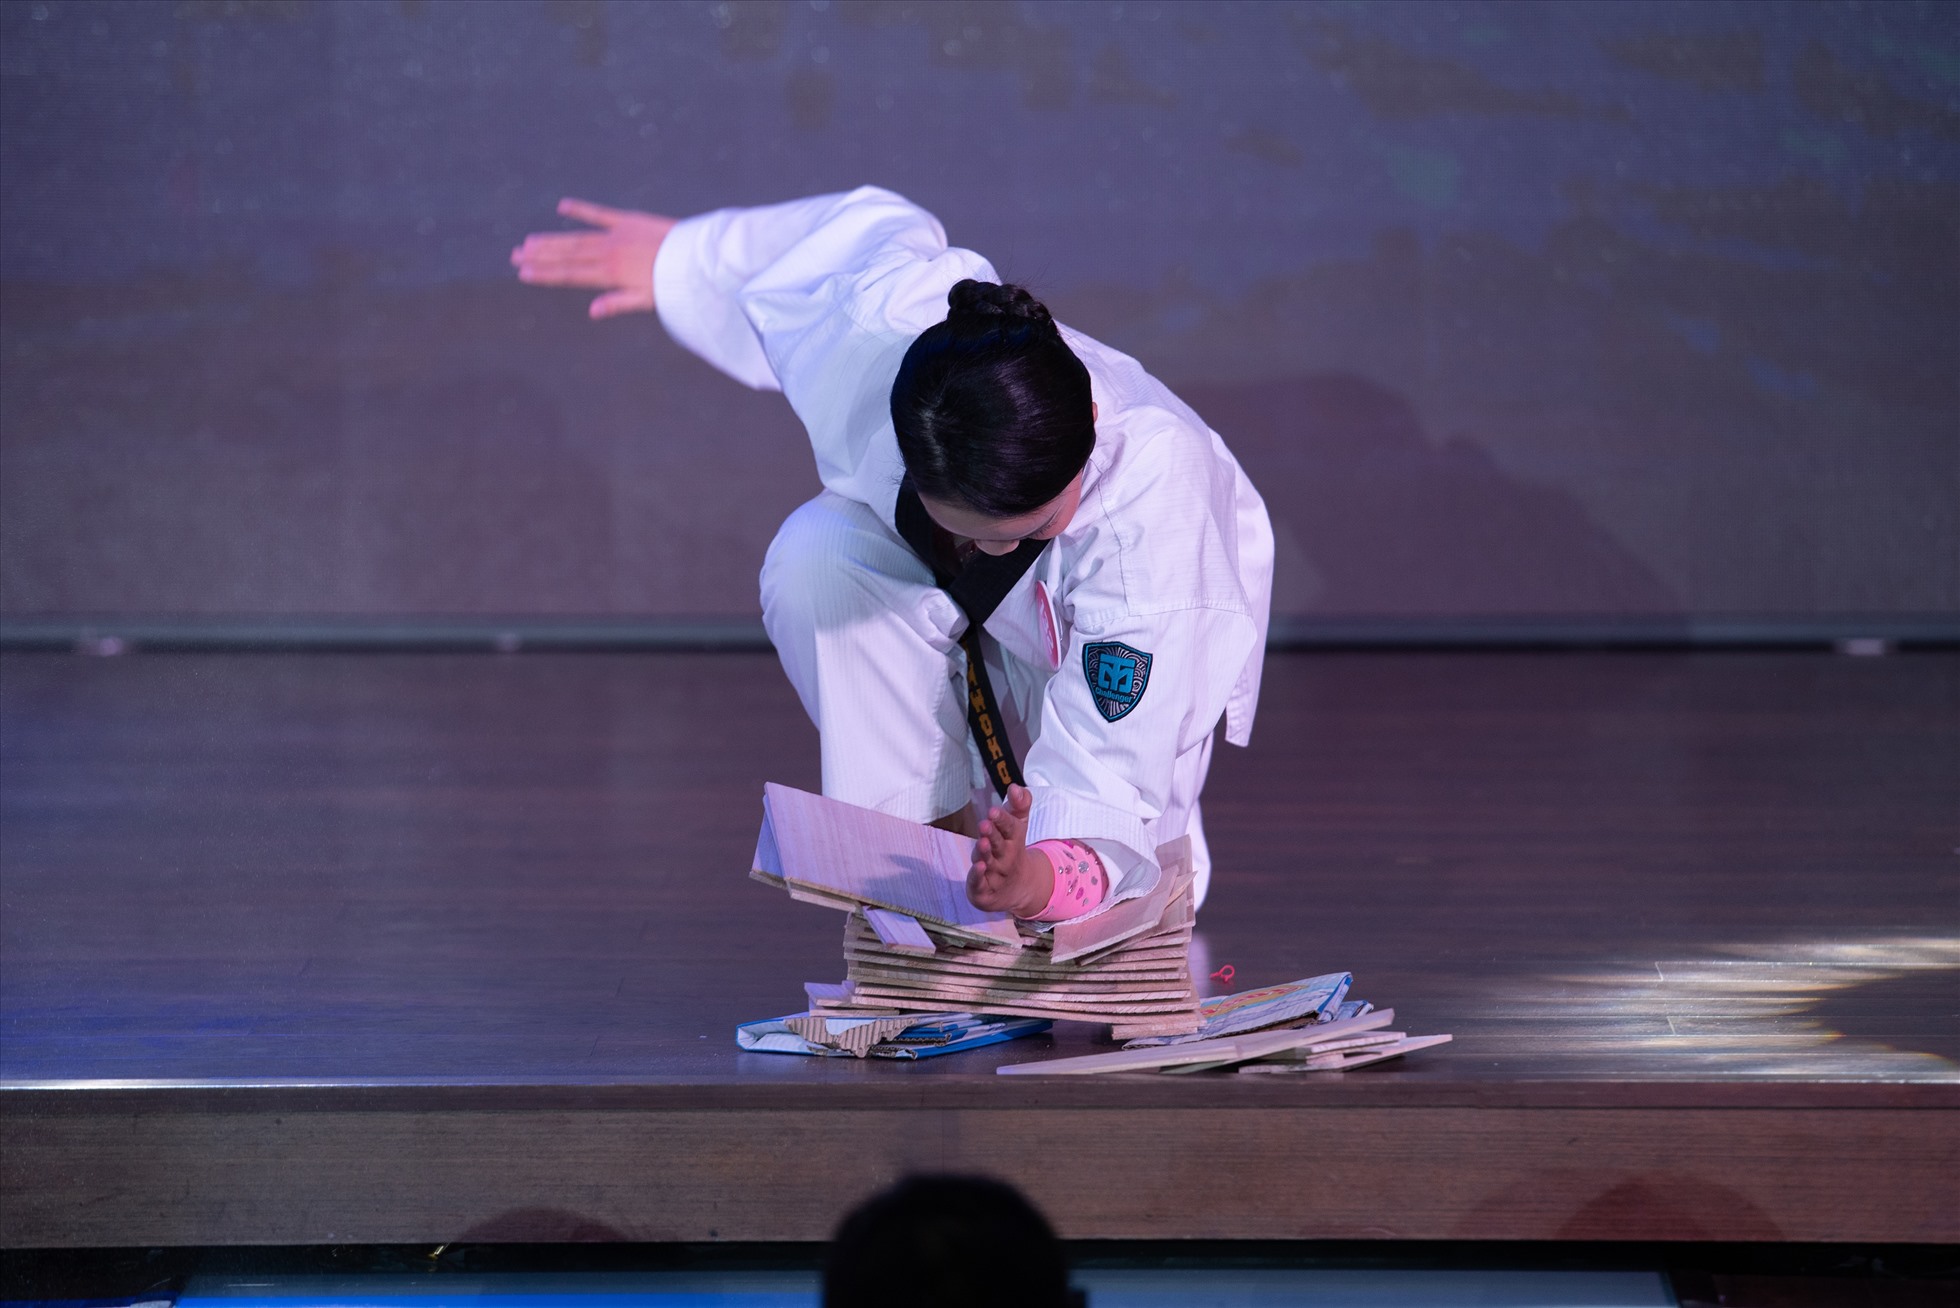 Màn múa võ thuật của kiện tướng Taekwondo Lê Thị Kim Hậu thu hút người xem khi cô sử dụng tay không chặt nát chồng gỗ khiến khán giả bất ngờ. Ảnh: Hoa hậu Việt Nam.